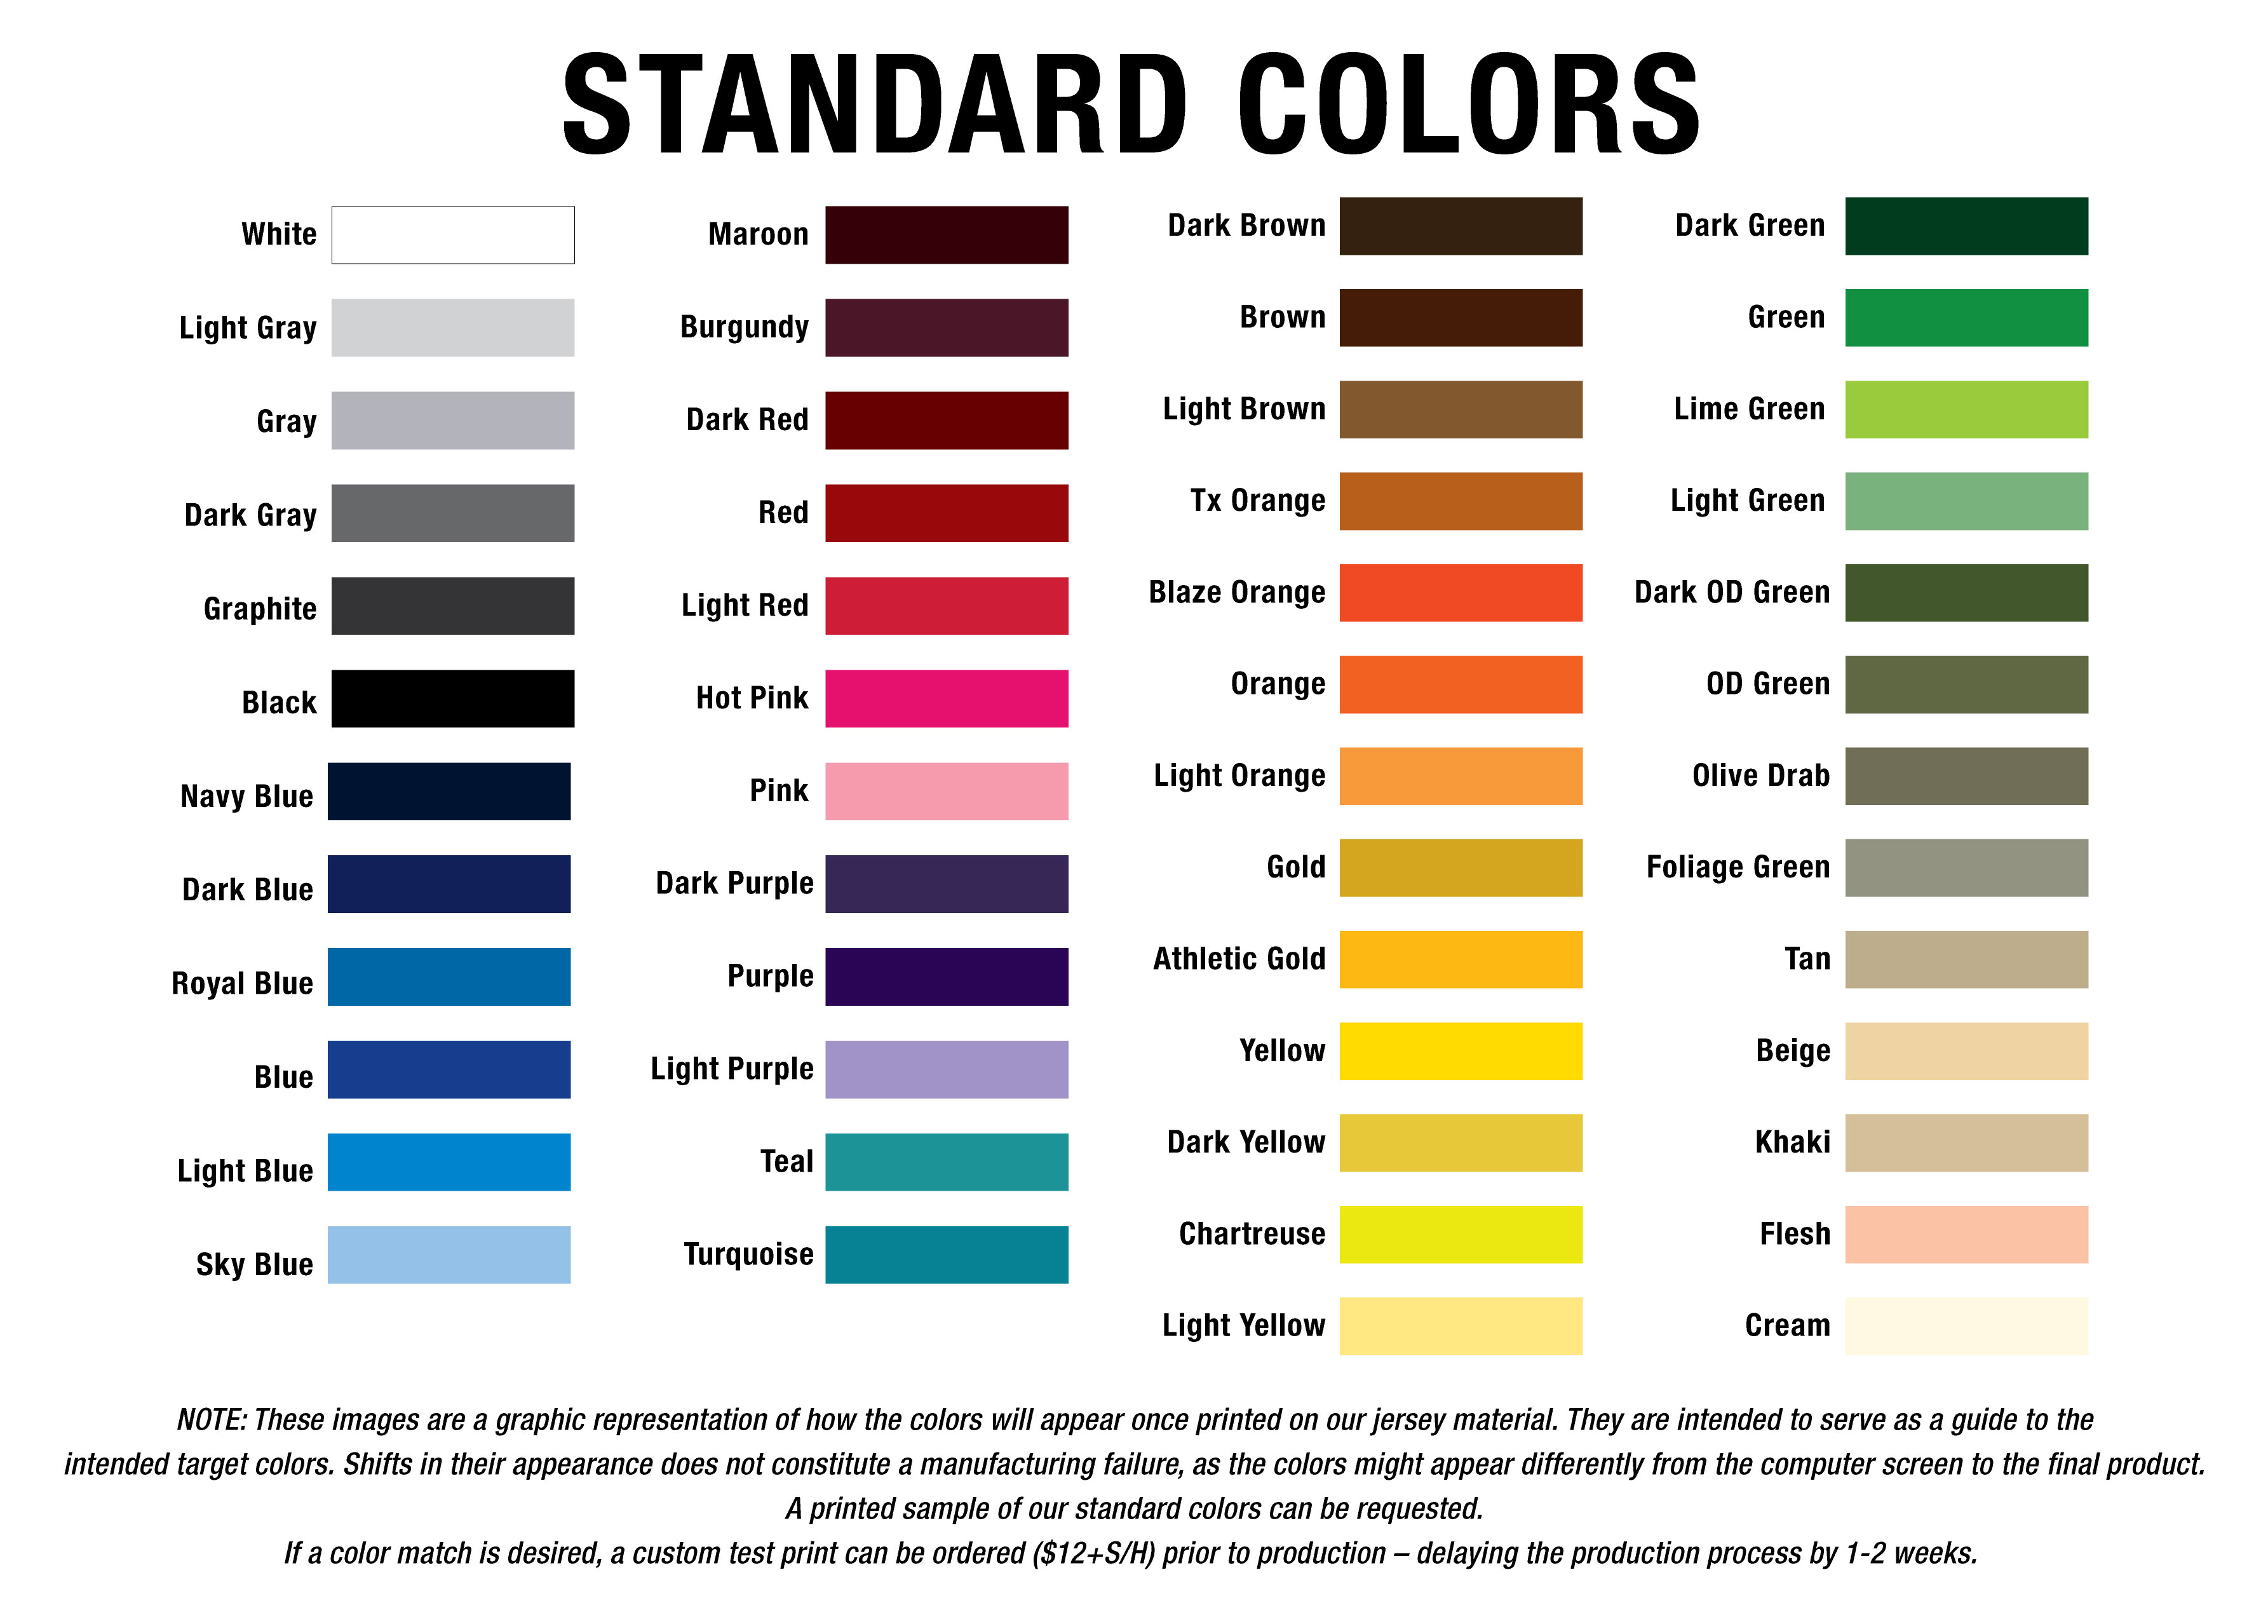 Standard Colors | G2 Gemini | The leader in custom apparel ...